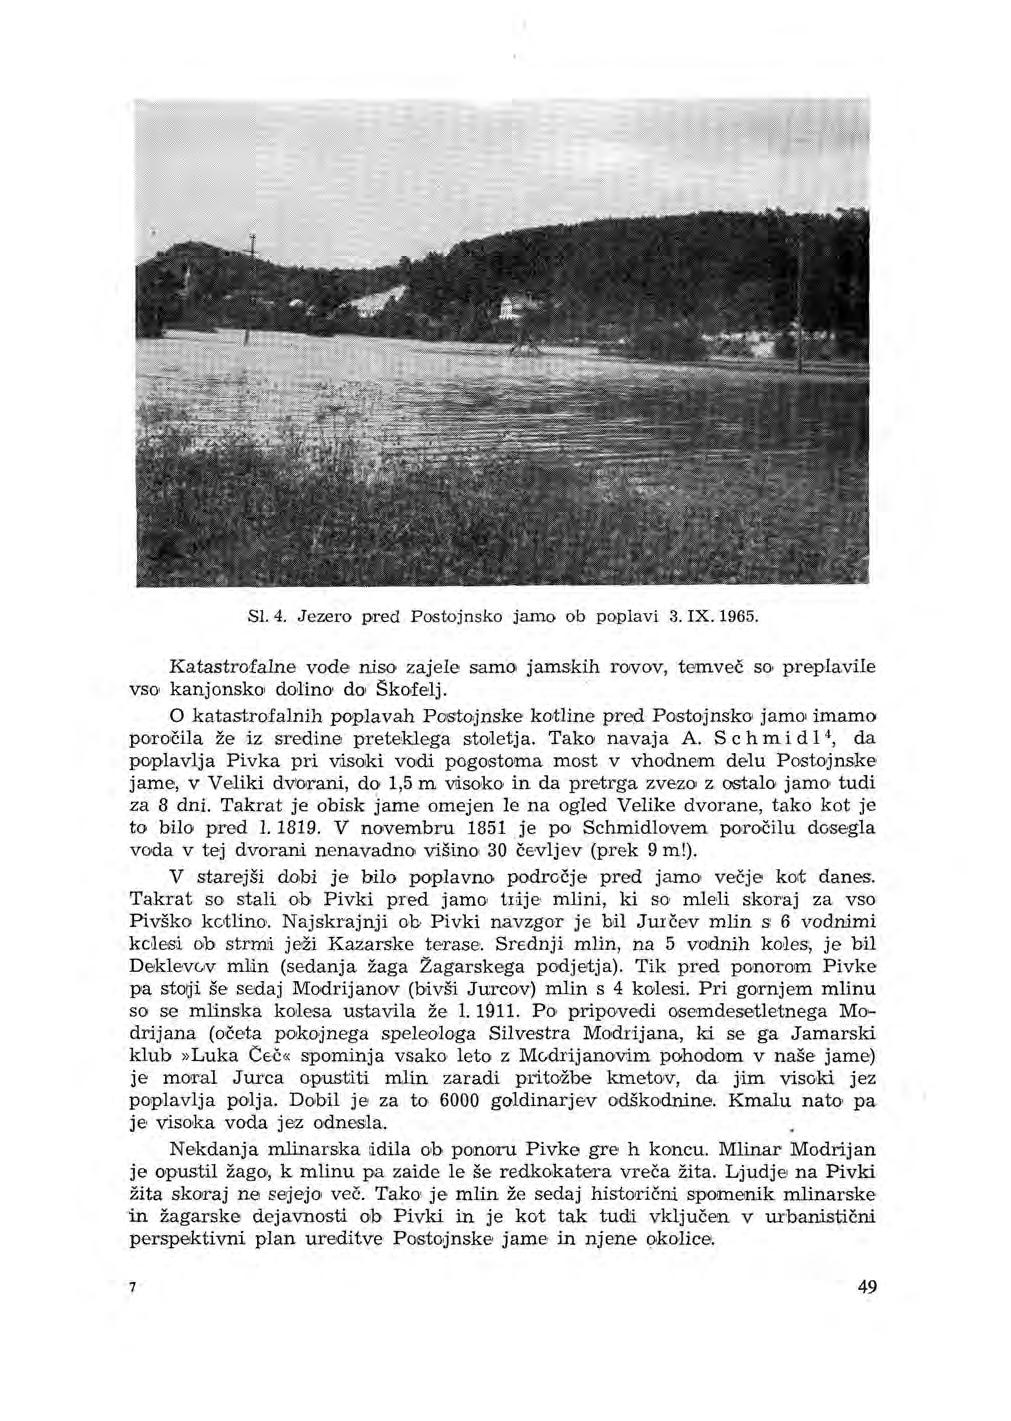 Sl. 4. Jezero pred Postojnsko jamo ob poplavi 3. IX. 1965. Katastro-falne vode niso zajele samo jamskih rwov, temveč so preplavile vso kanjonsko dolino do Škofelj.